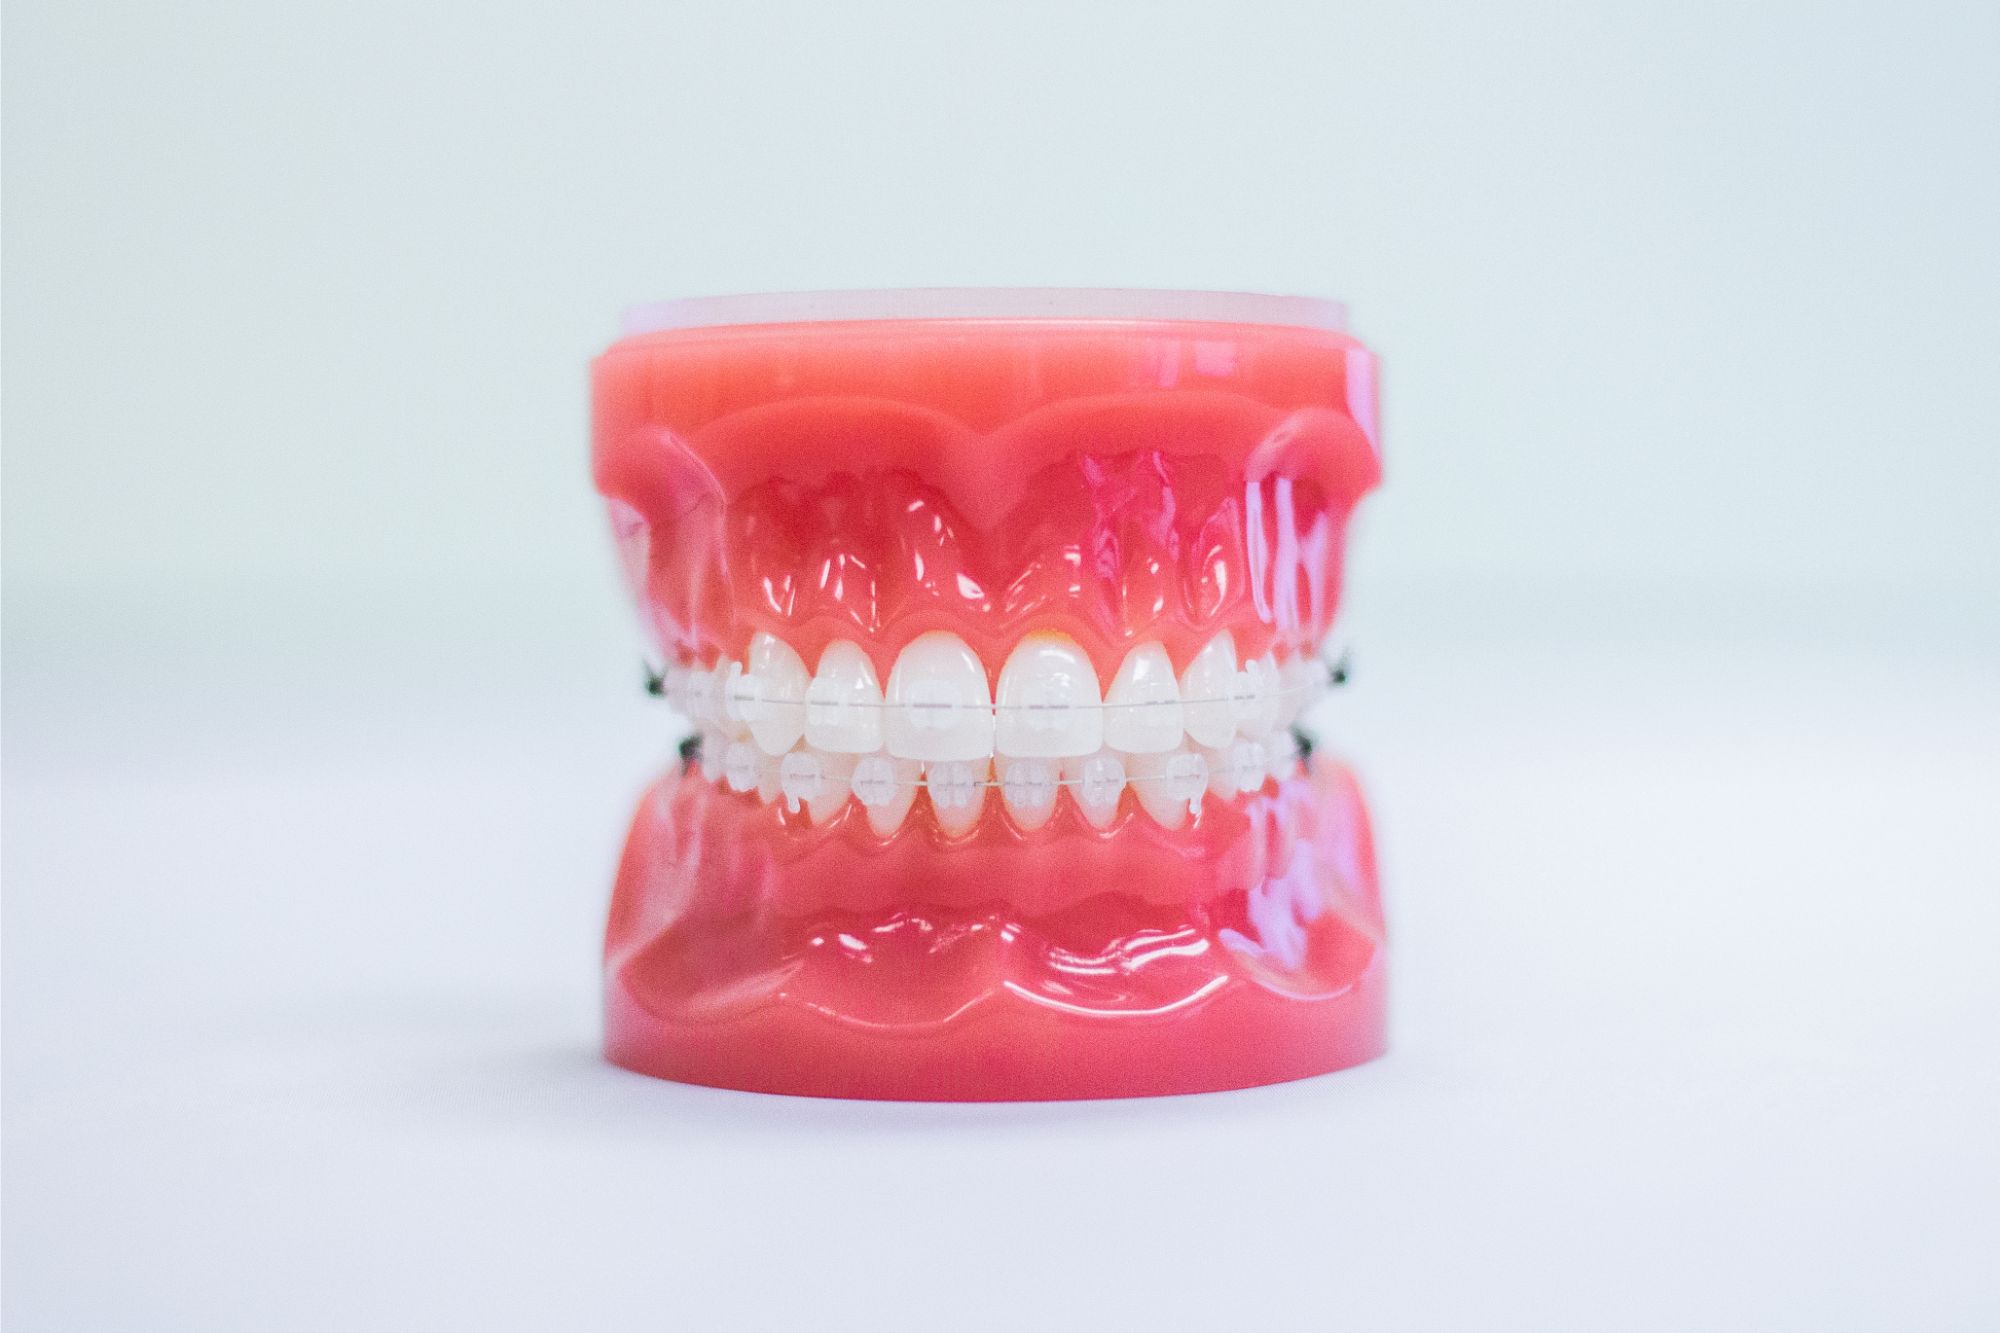 Clear braces on a teeth mold